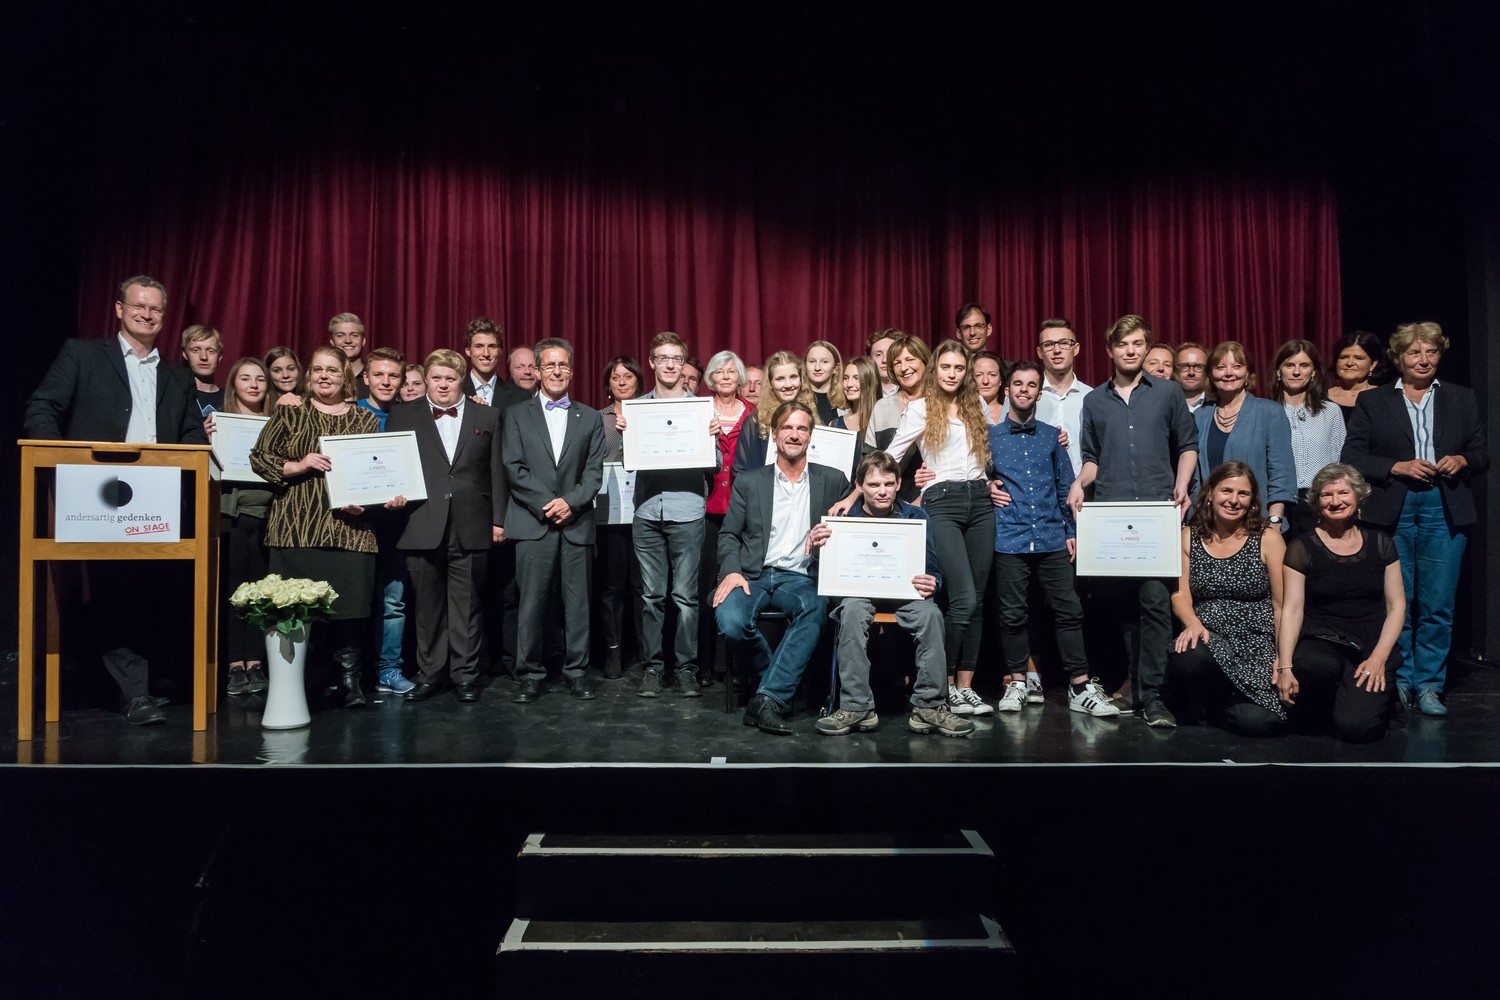 Gruppenfoto aller Preisräger*innen auf der Bühne bei der Preisverleihung 2016